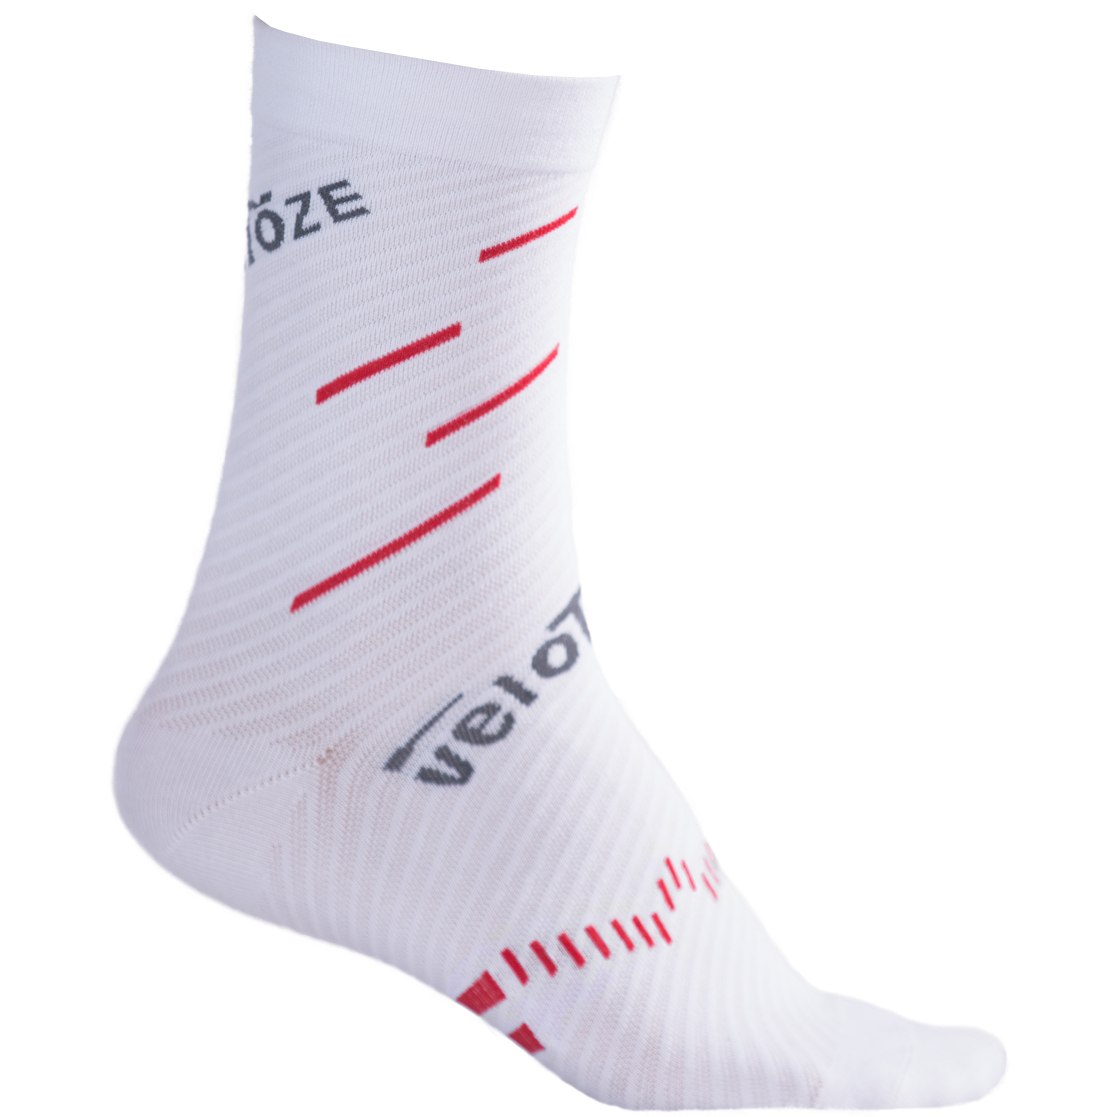 Produktbild von veloToze Coolmax Socken - Weiß/Rot